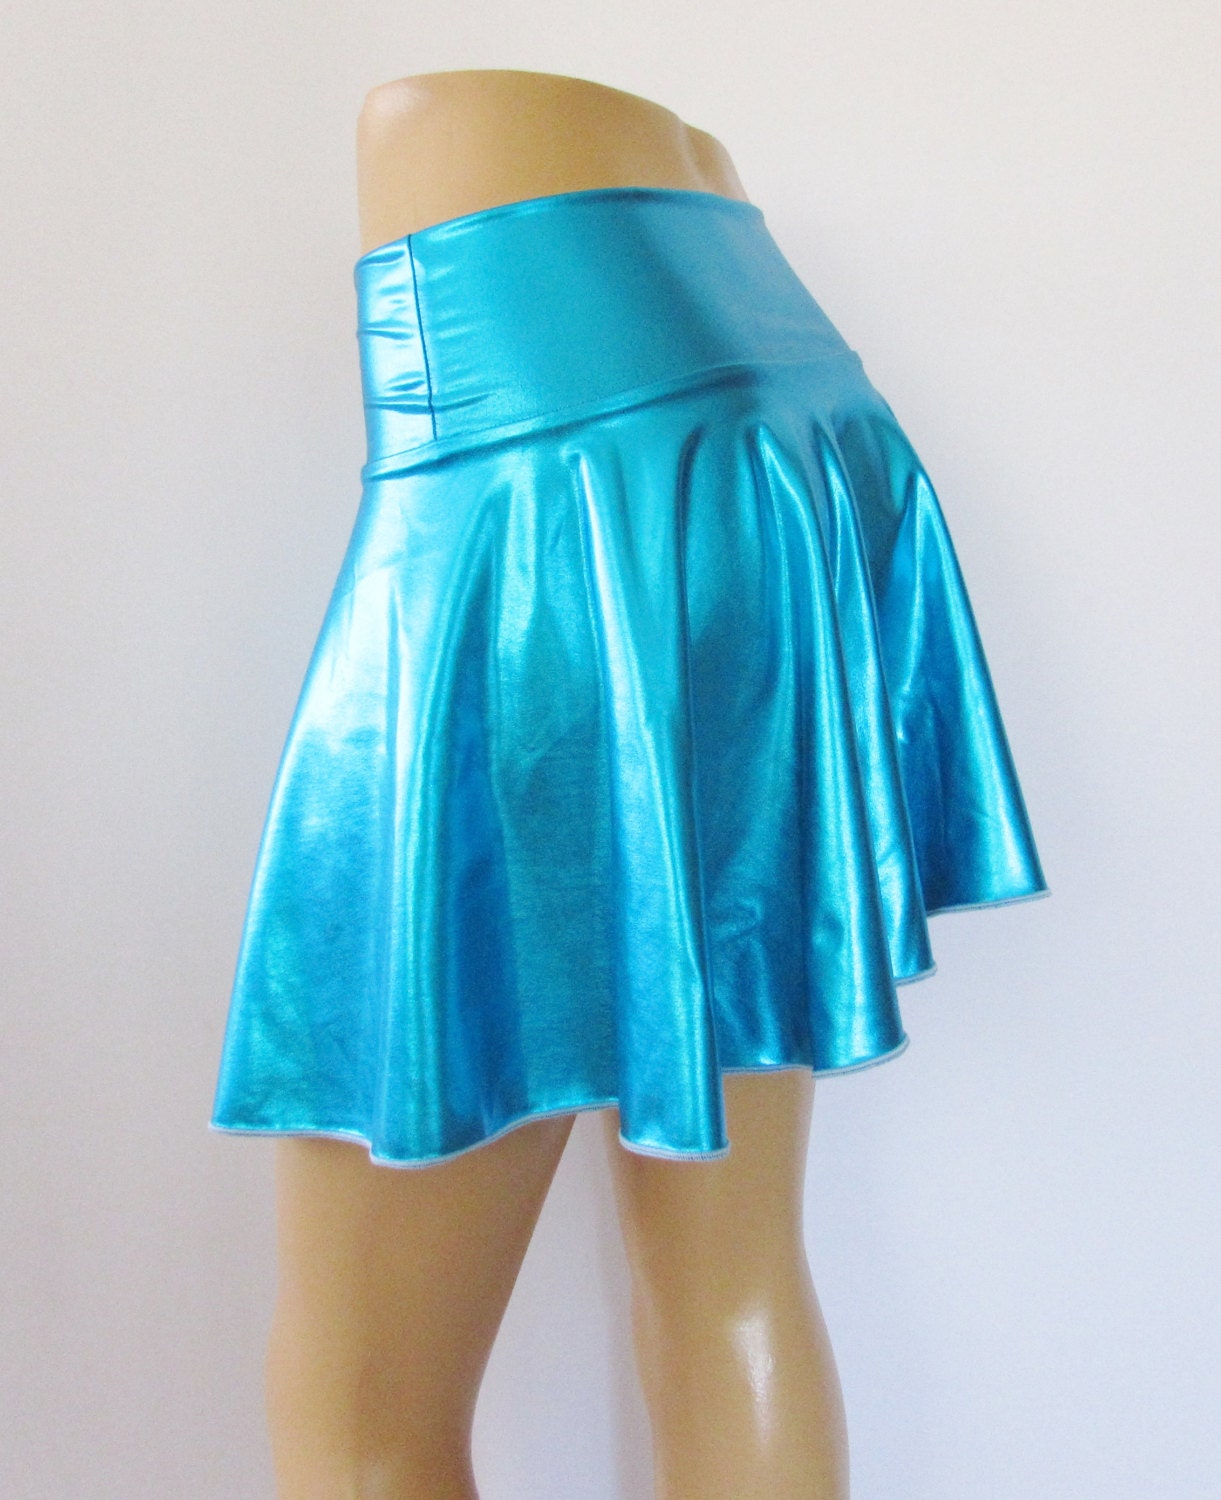 Metallic Mini skirt Spandex Skater Skirt Flare 15 long